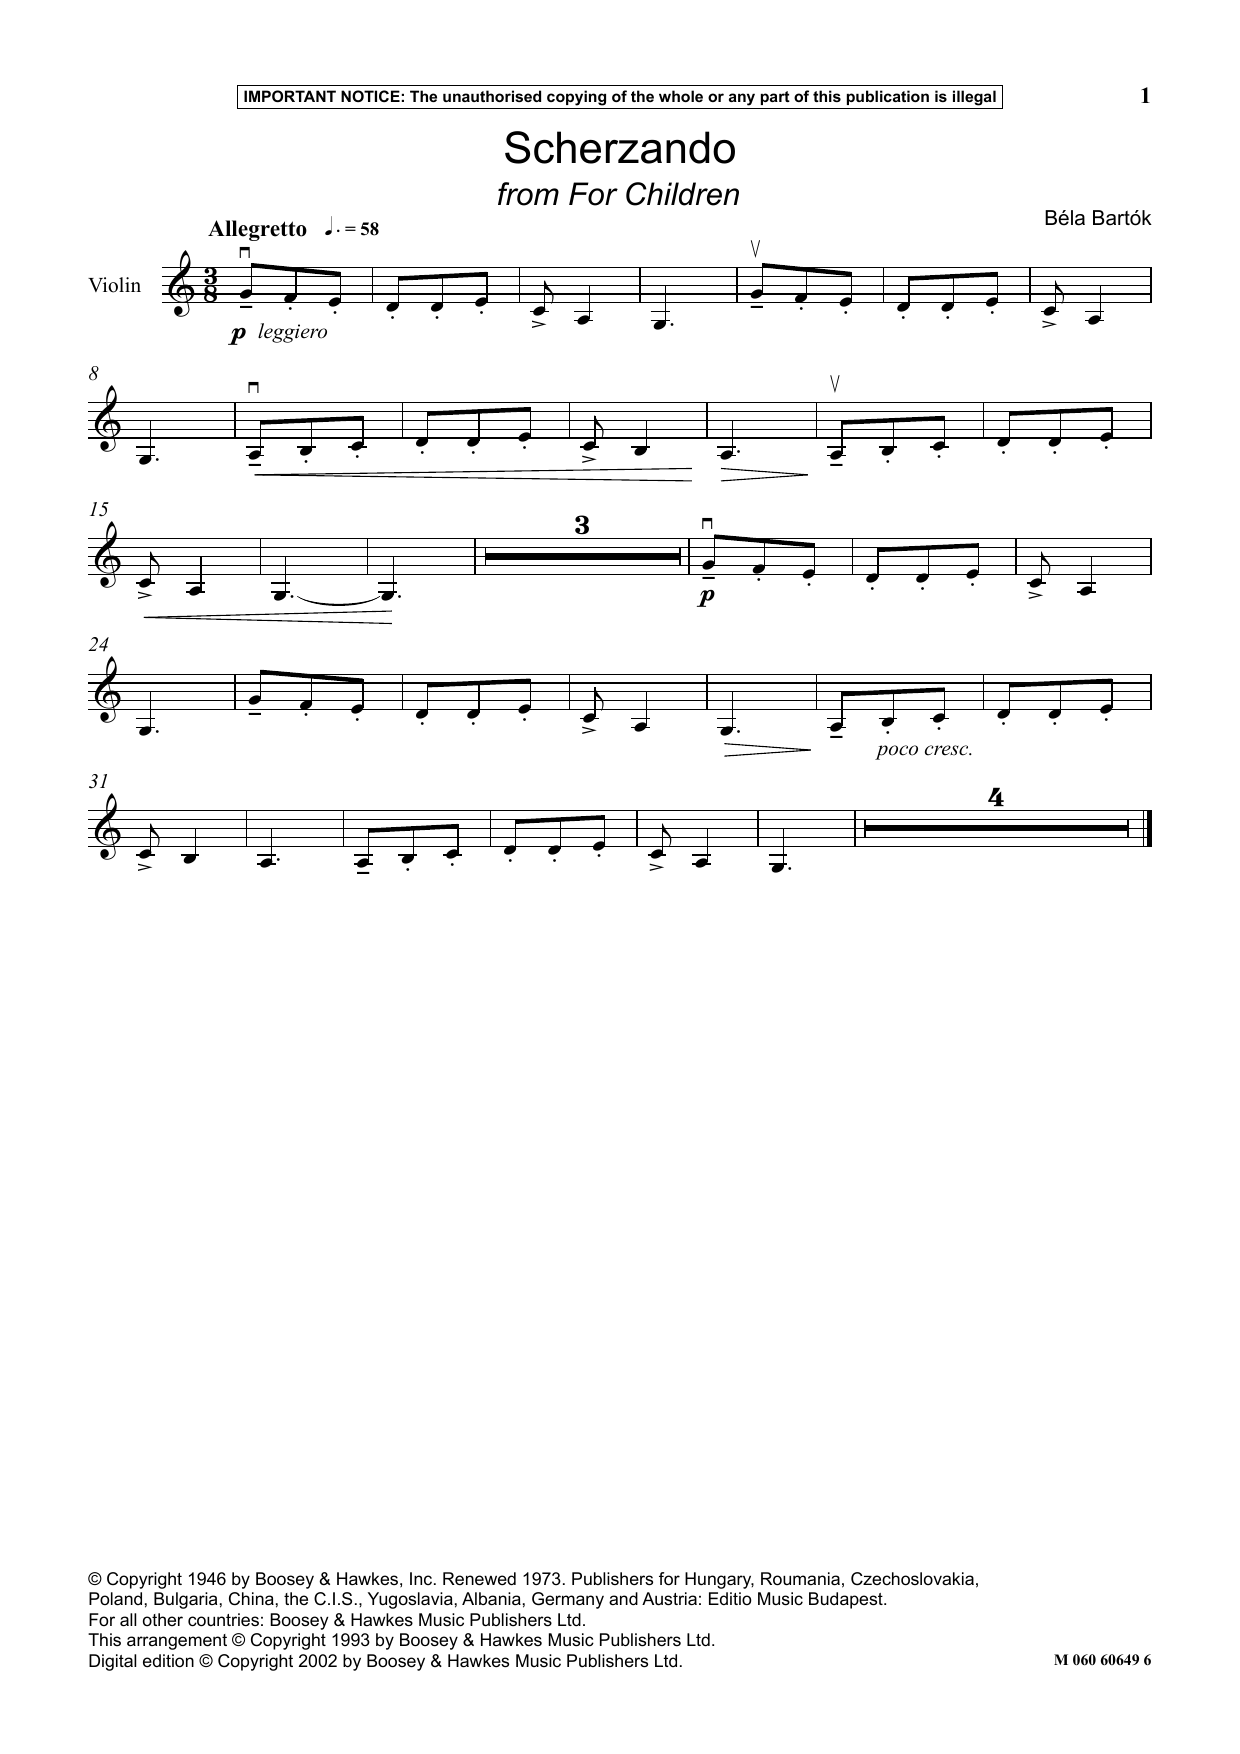 Download Béla Bartók Scherzando (from For Children) Sheet Music